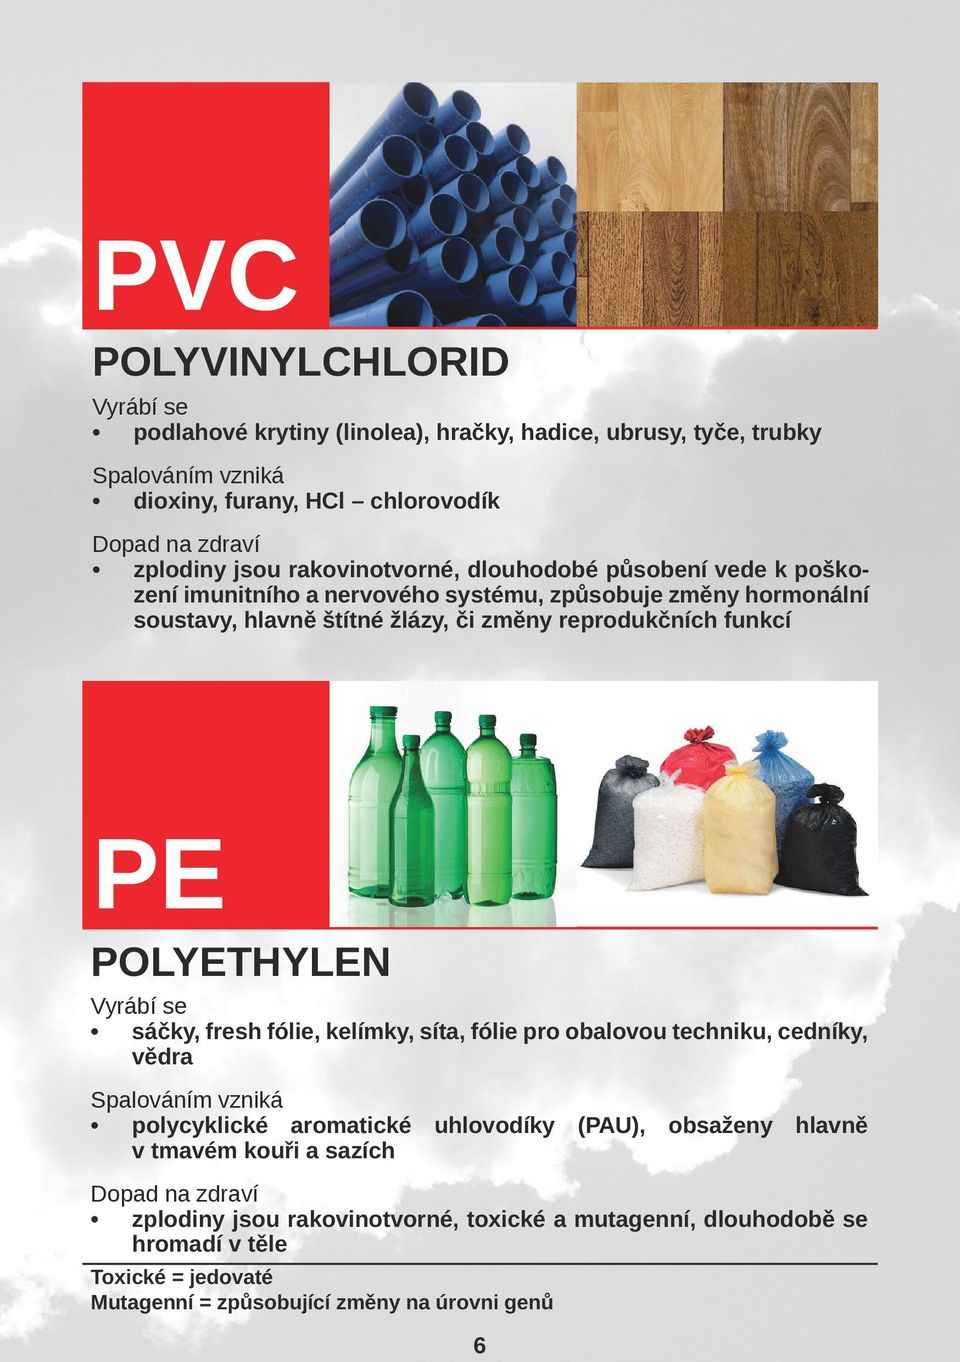 Polyethylen Vyrábí se sáčky, fresh fólie, kelímky, síta, fólie pro obalovou techniku, cedníky, vědra Spalováním vzniká polycyklické aromatické uhlovodíky (PAU), obsaženy hlavně v